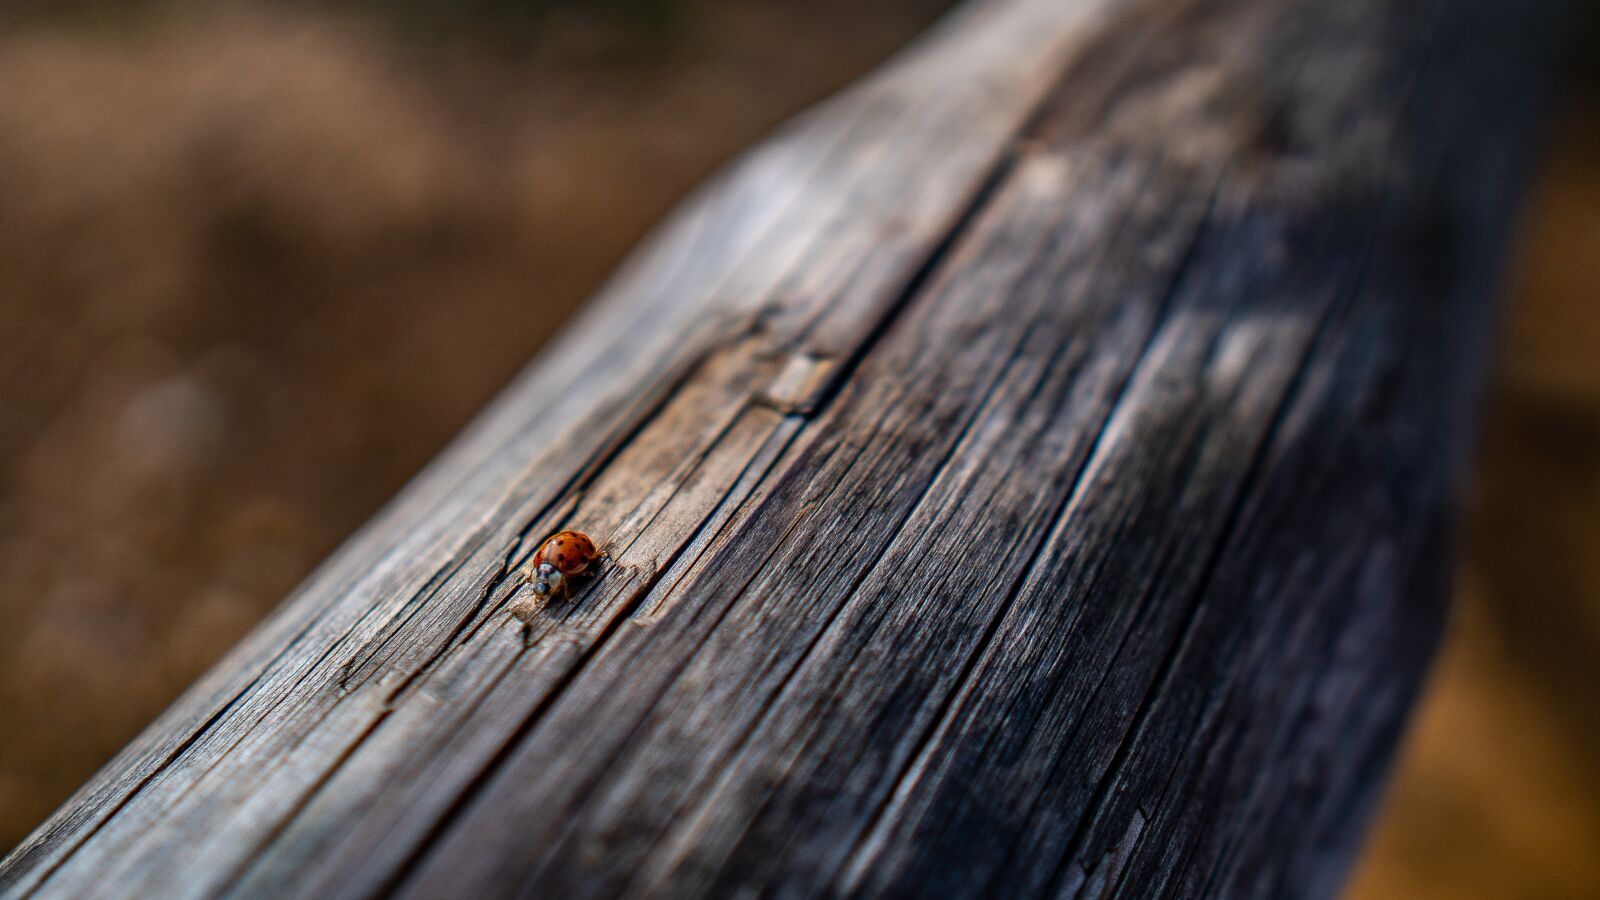 Sony a6300 sample photo. Ladybug, wood, nature photography